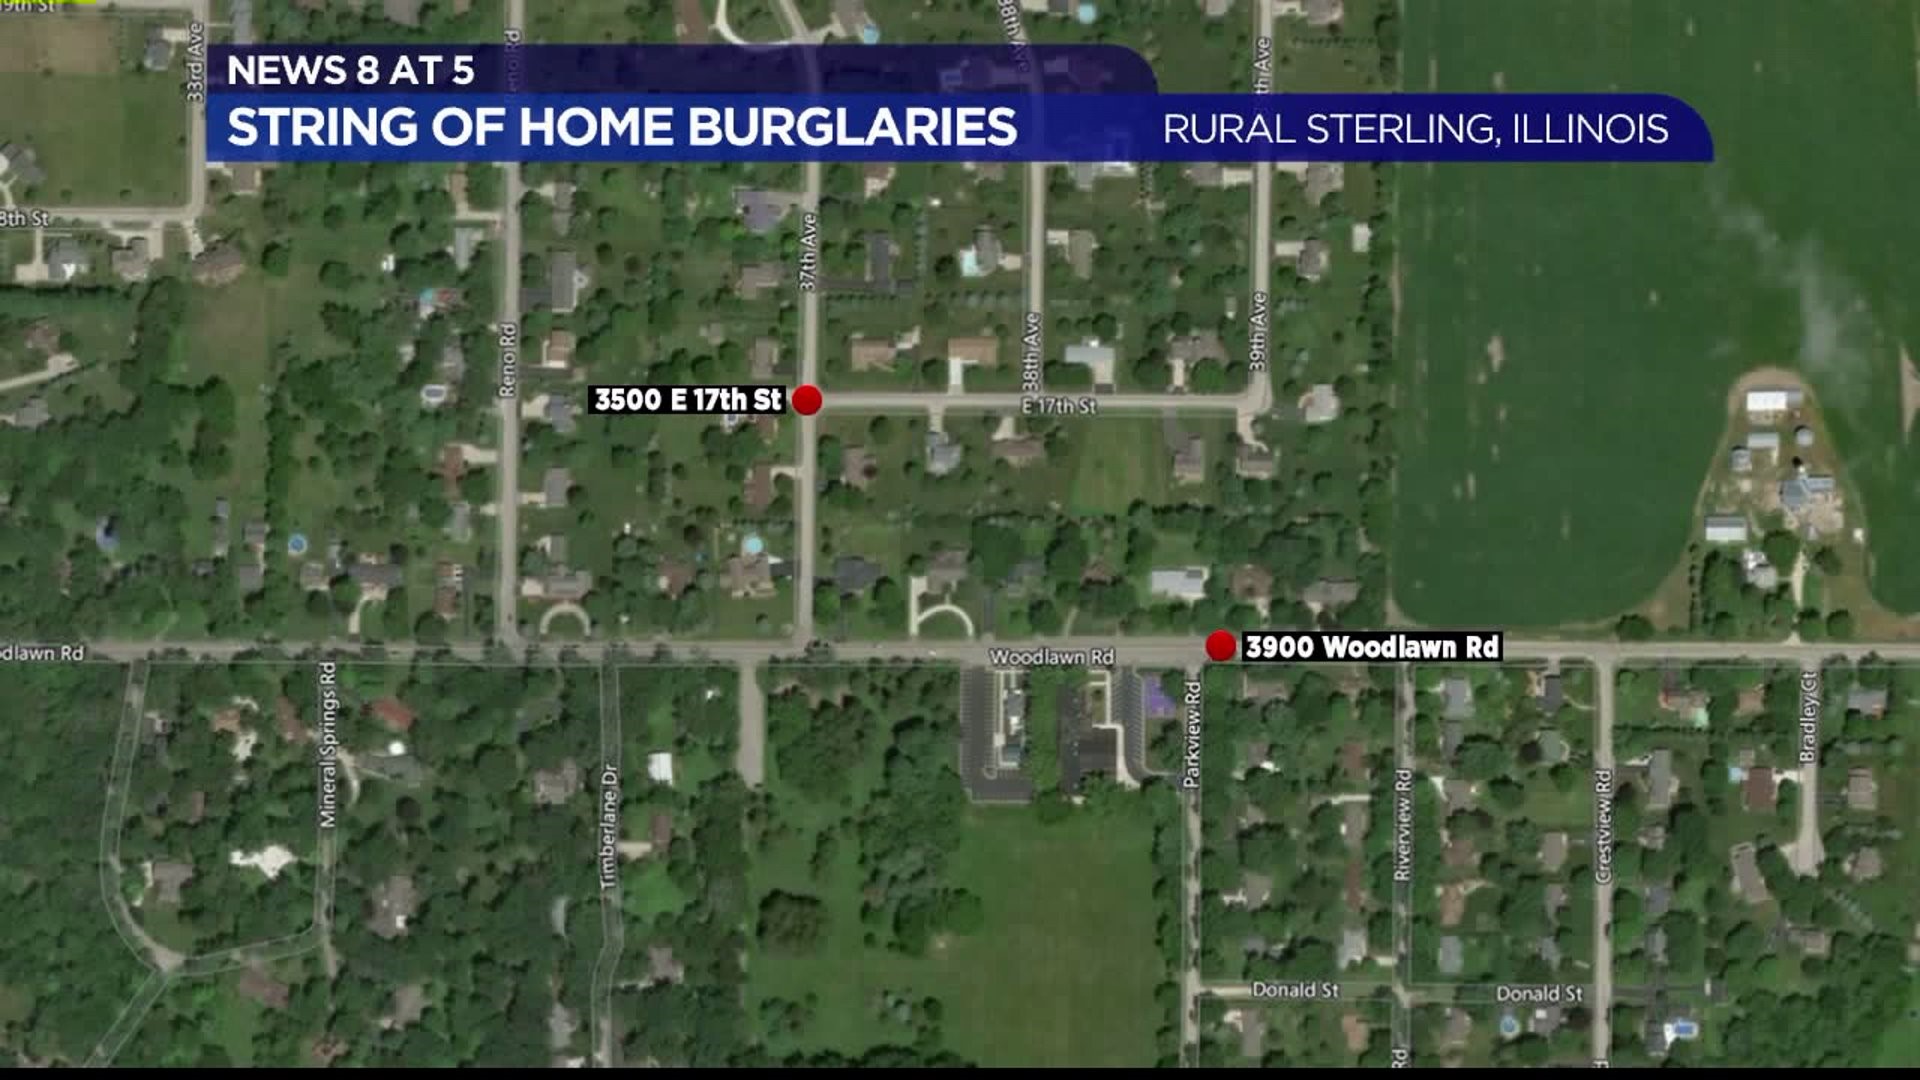 Burglaries in Whiteside County